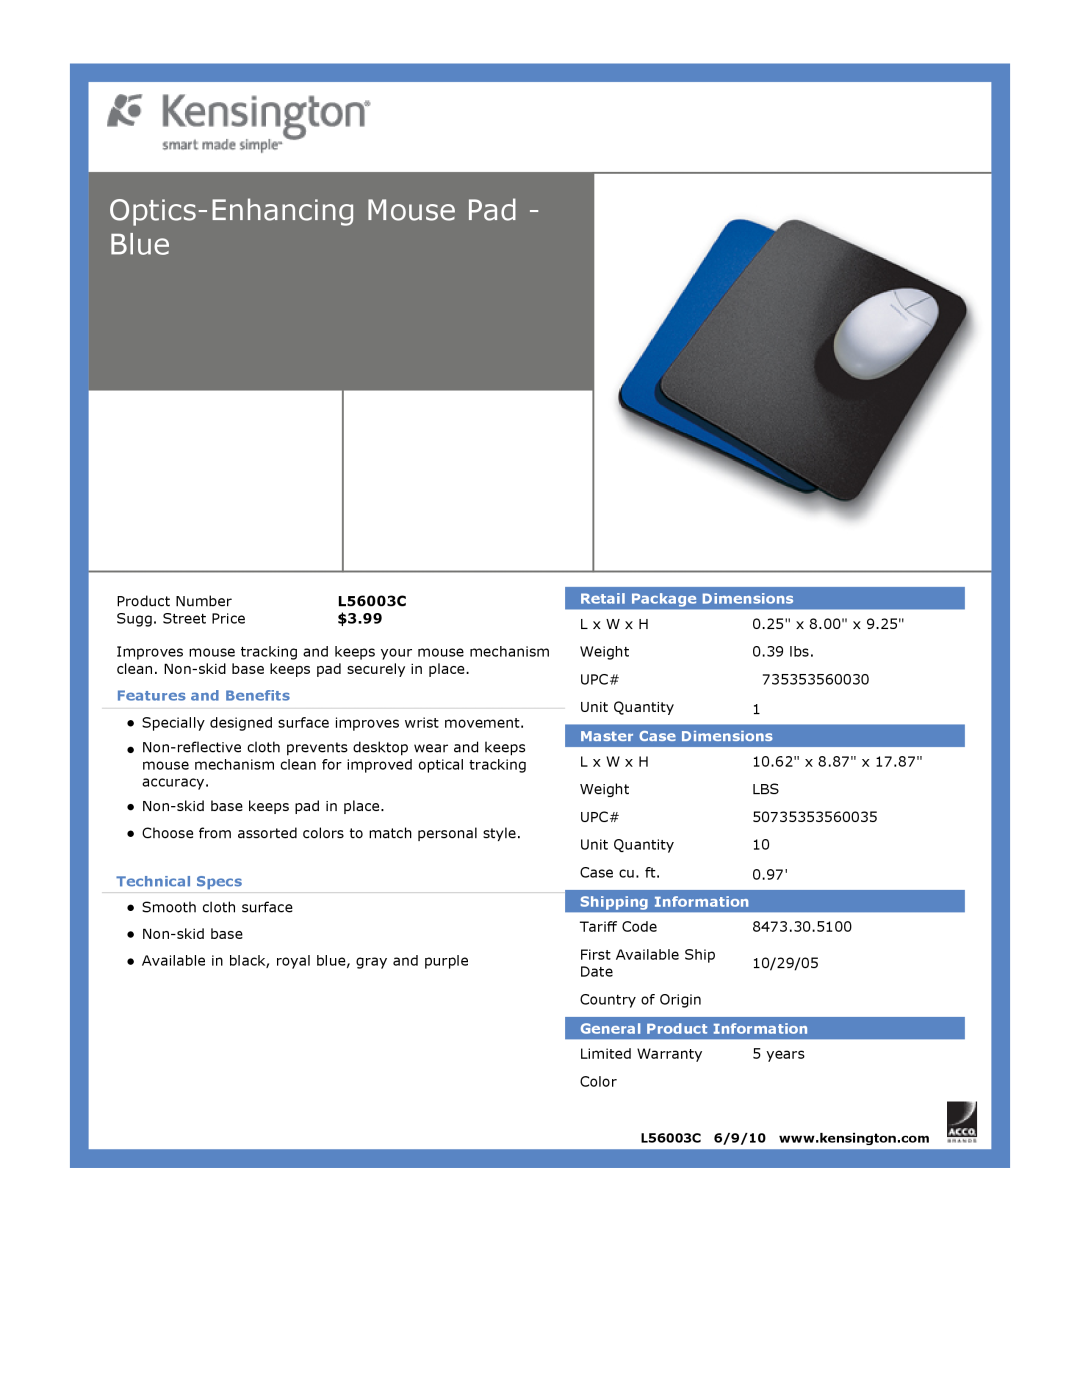 Kensington EU64325 Optics-EnhancingMouse Pad - Blue, $3.99, Features and Benefits, Technical Specs, Master Case Dimensions 